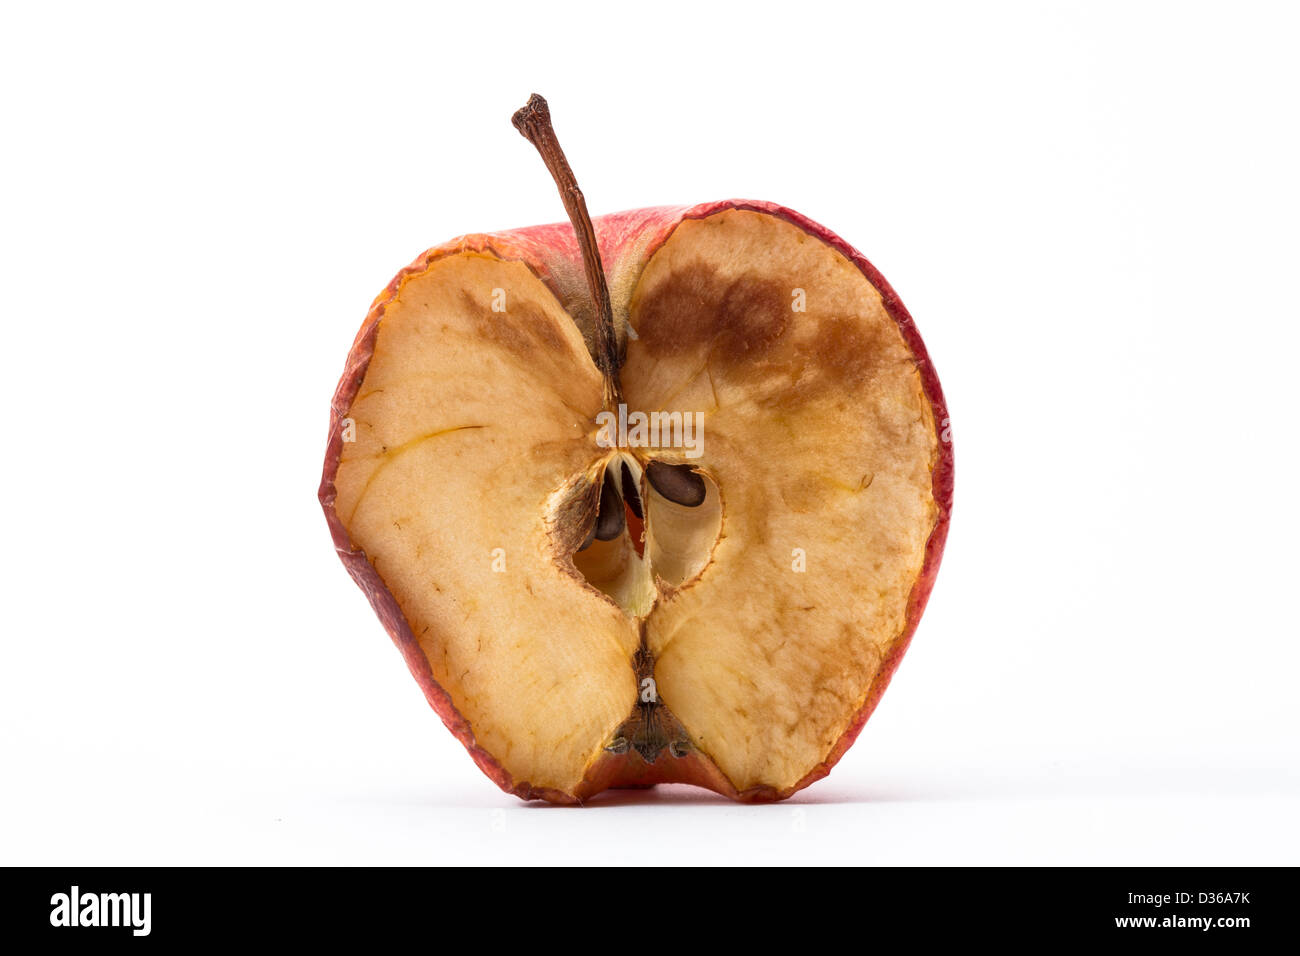 Half a rotten apple Stock Photo